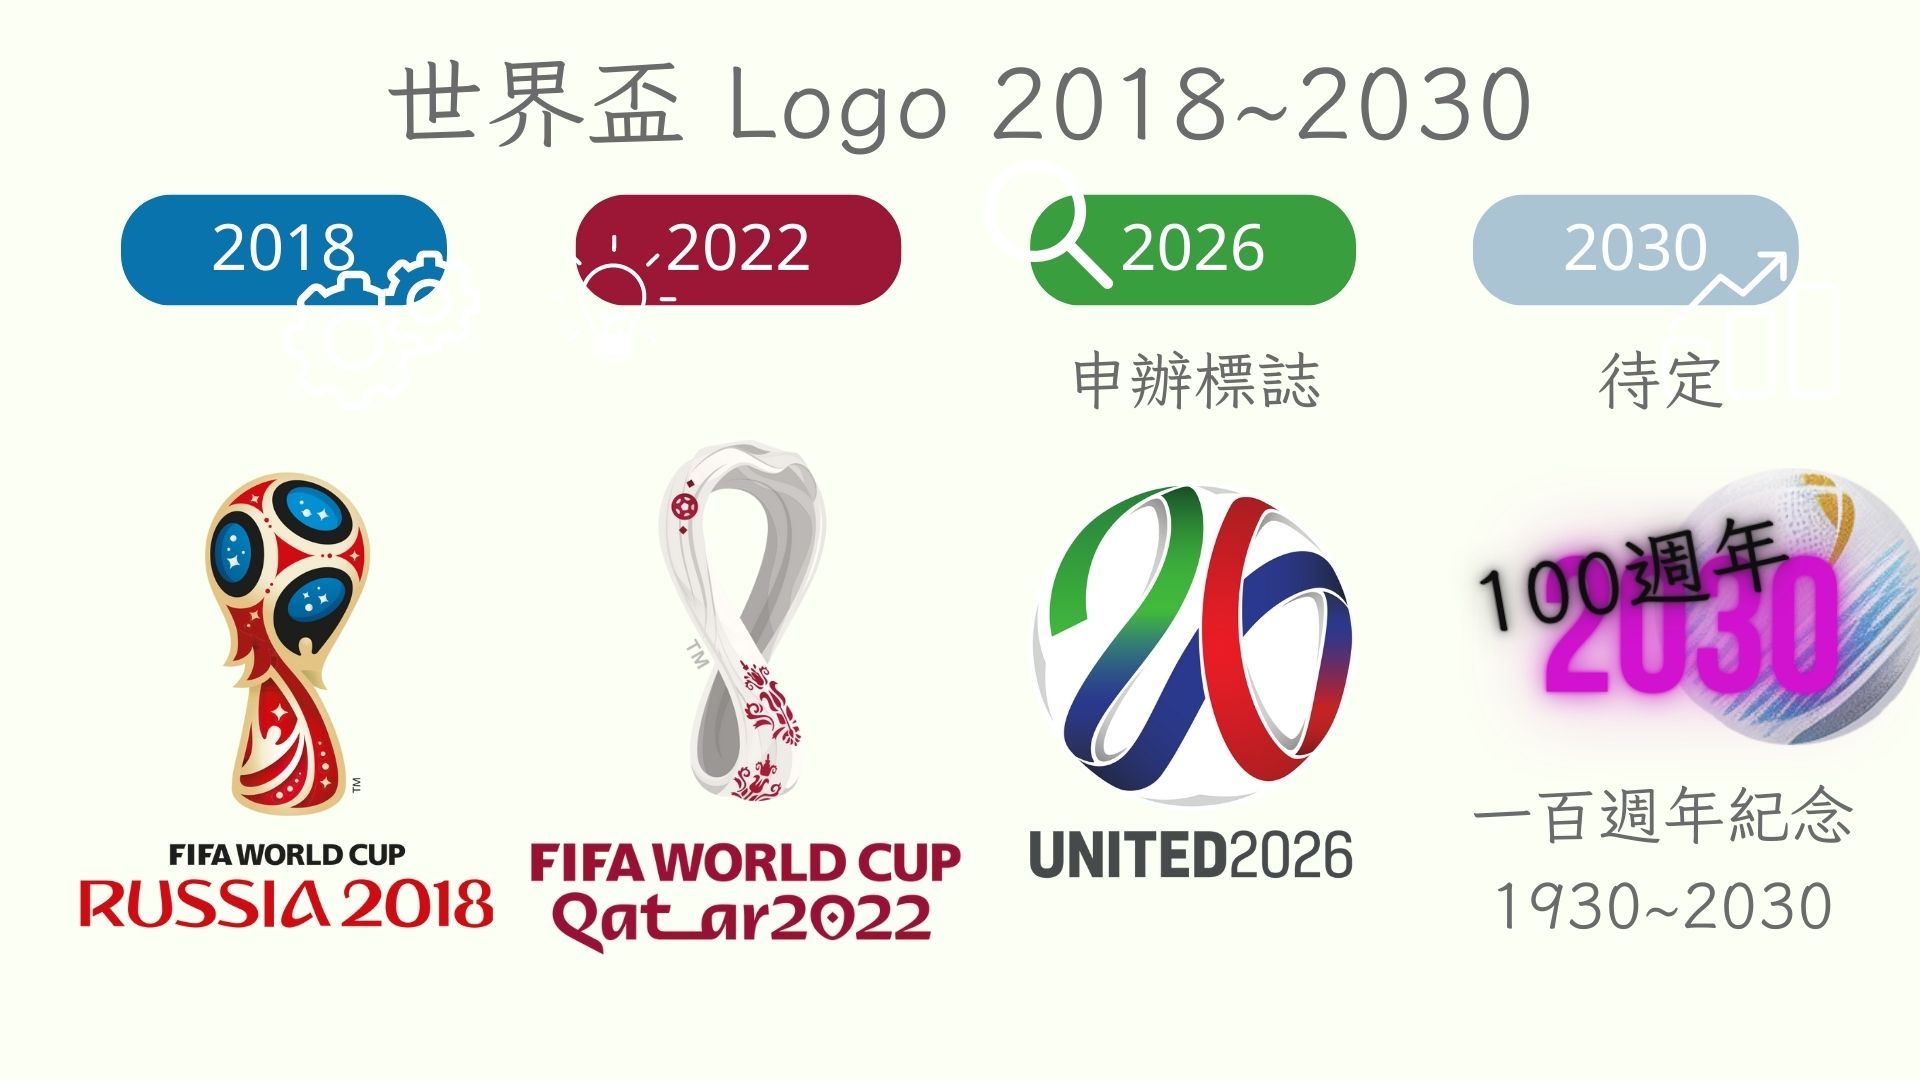 2026世界盃及2030年一百週年紀念及logo